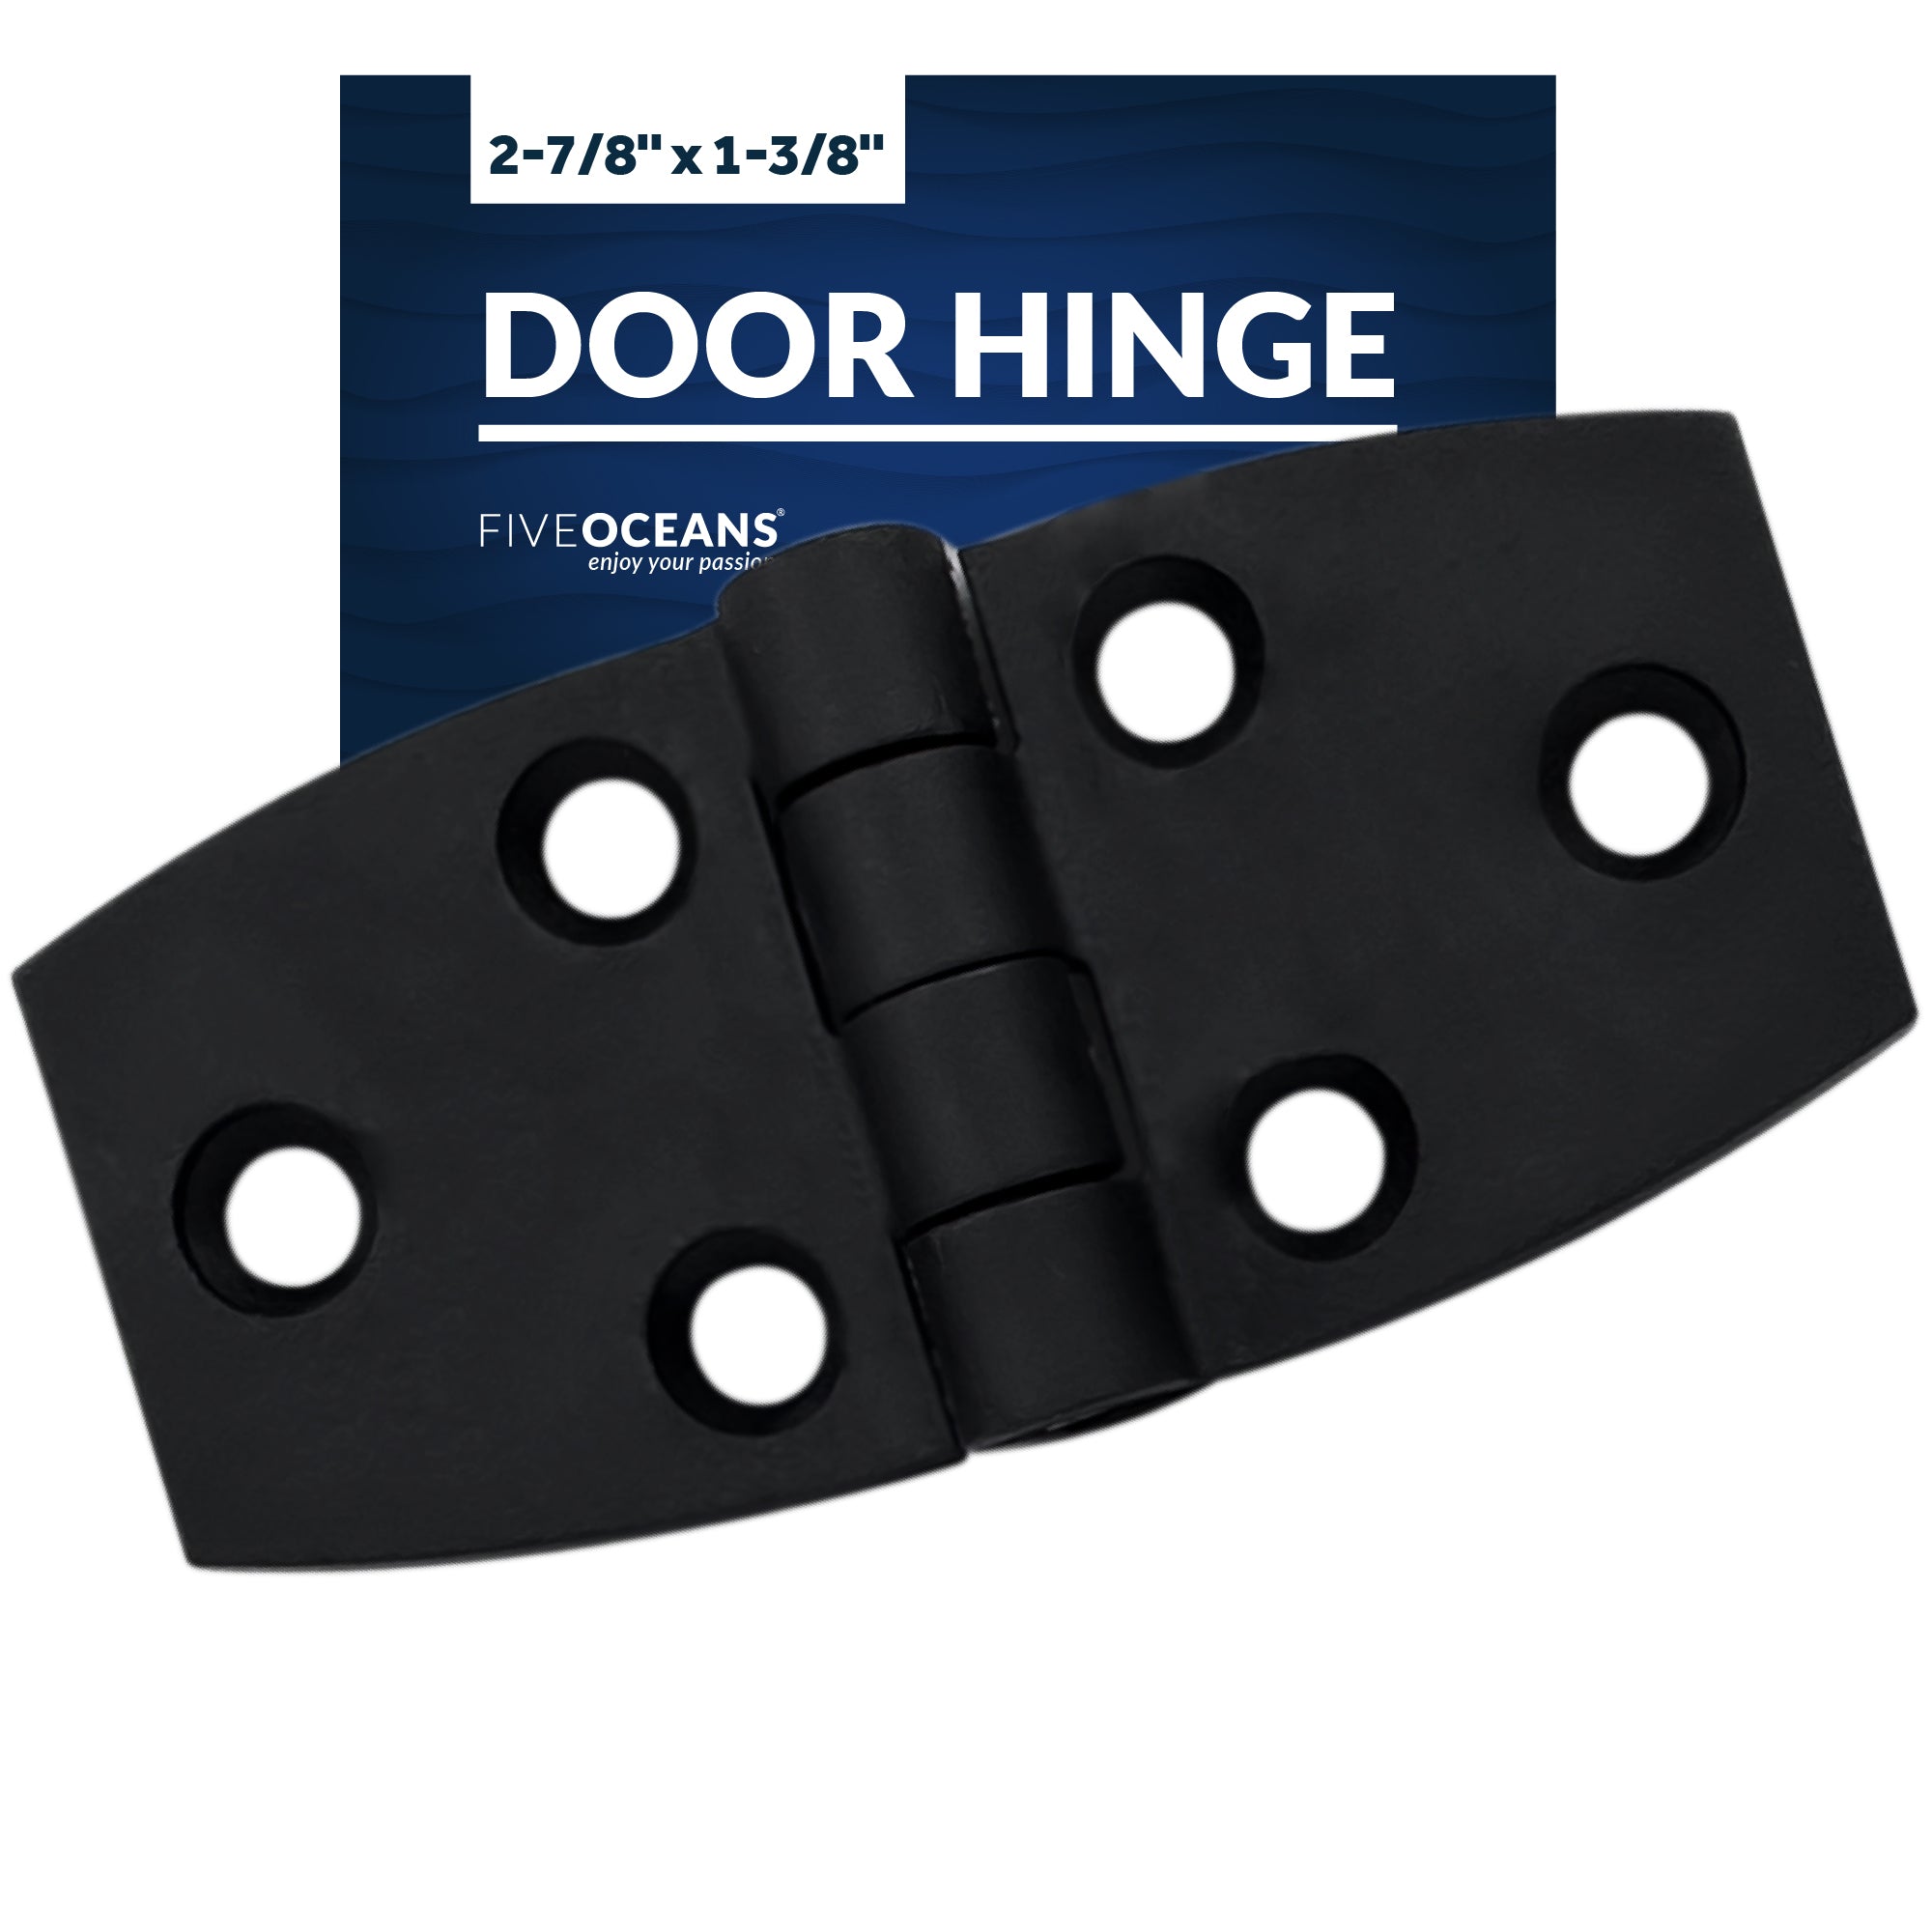 Door Hinge, 2-7/8" x 1-3/8", Black - FO80